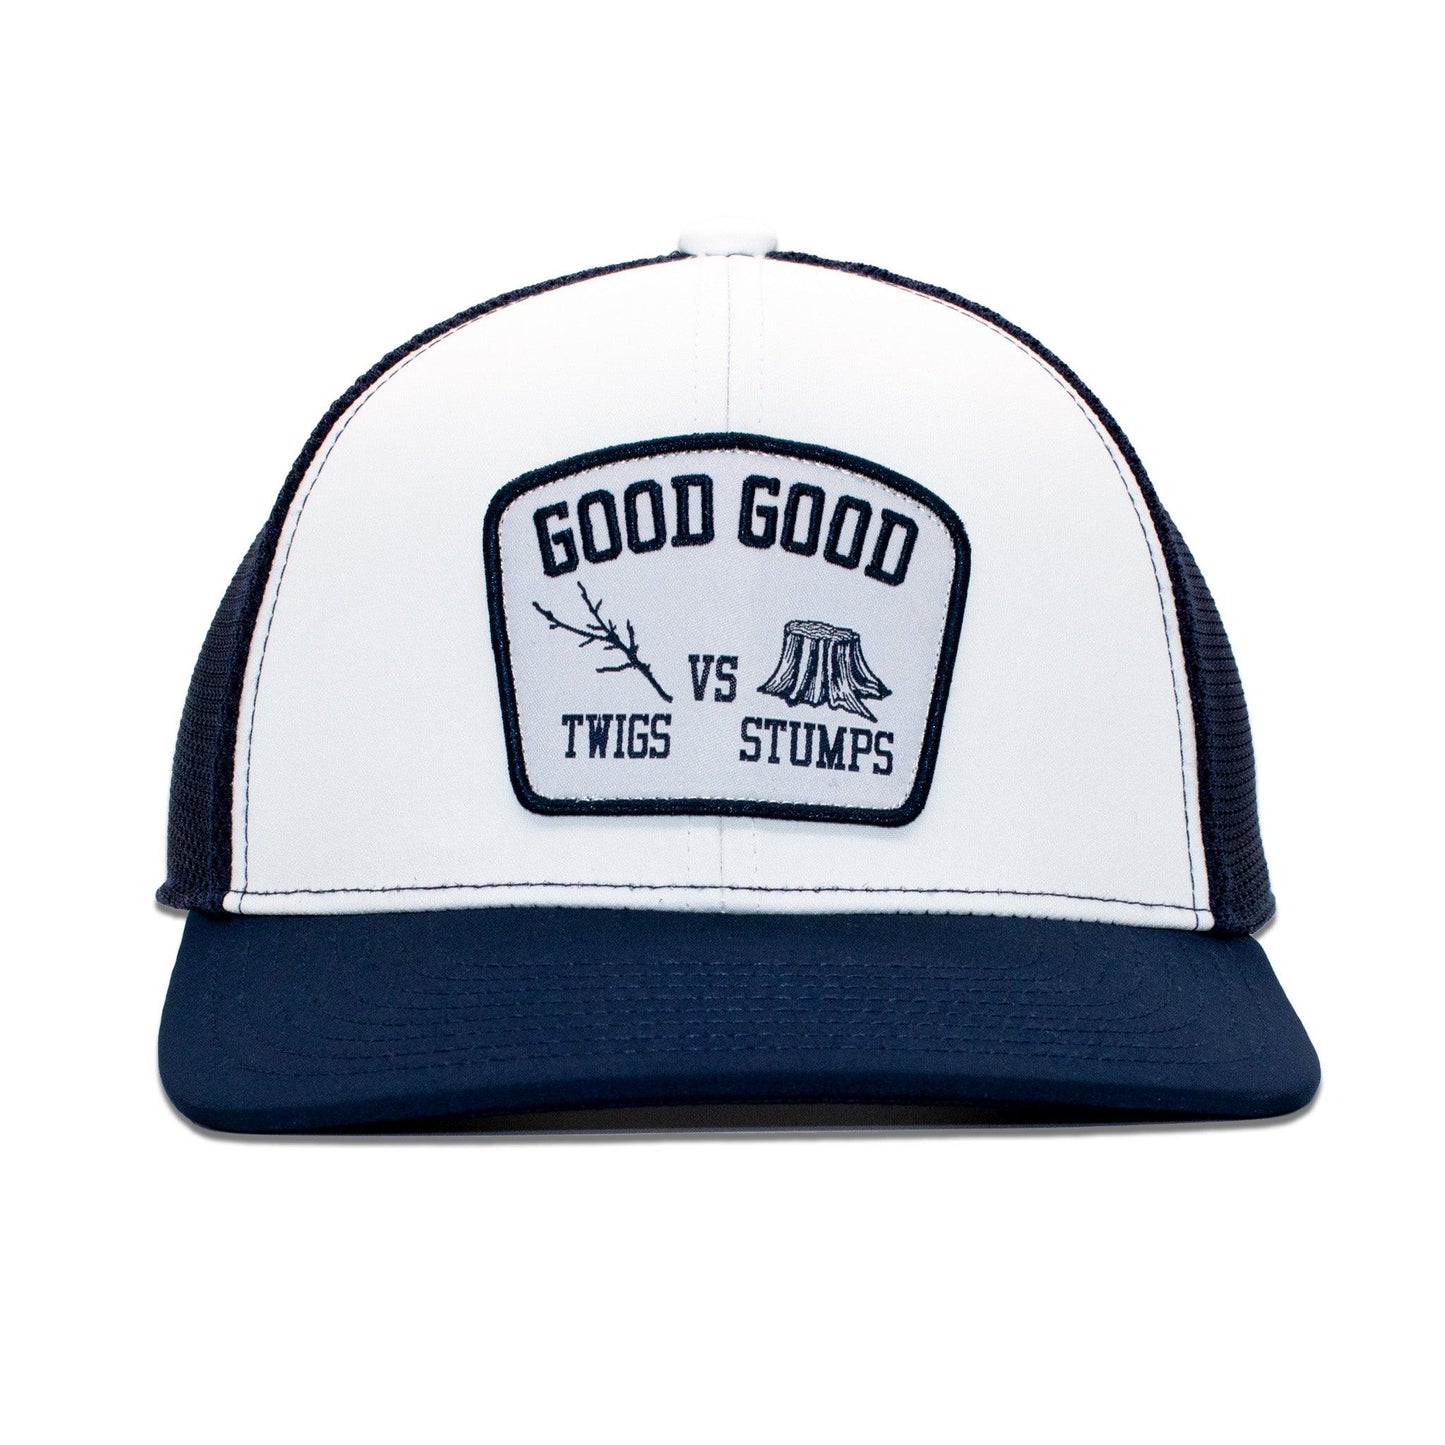 Twigs vs. Stumps Trucker Hat - Good Good Golf